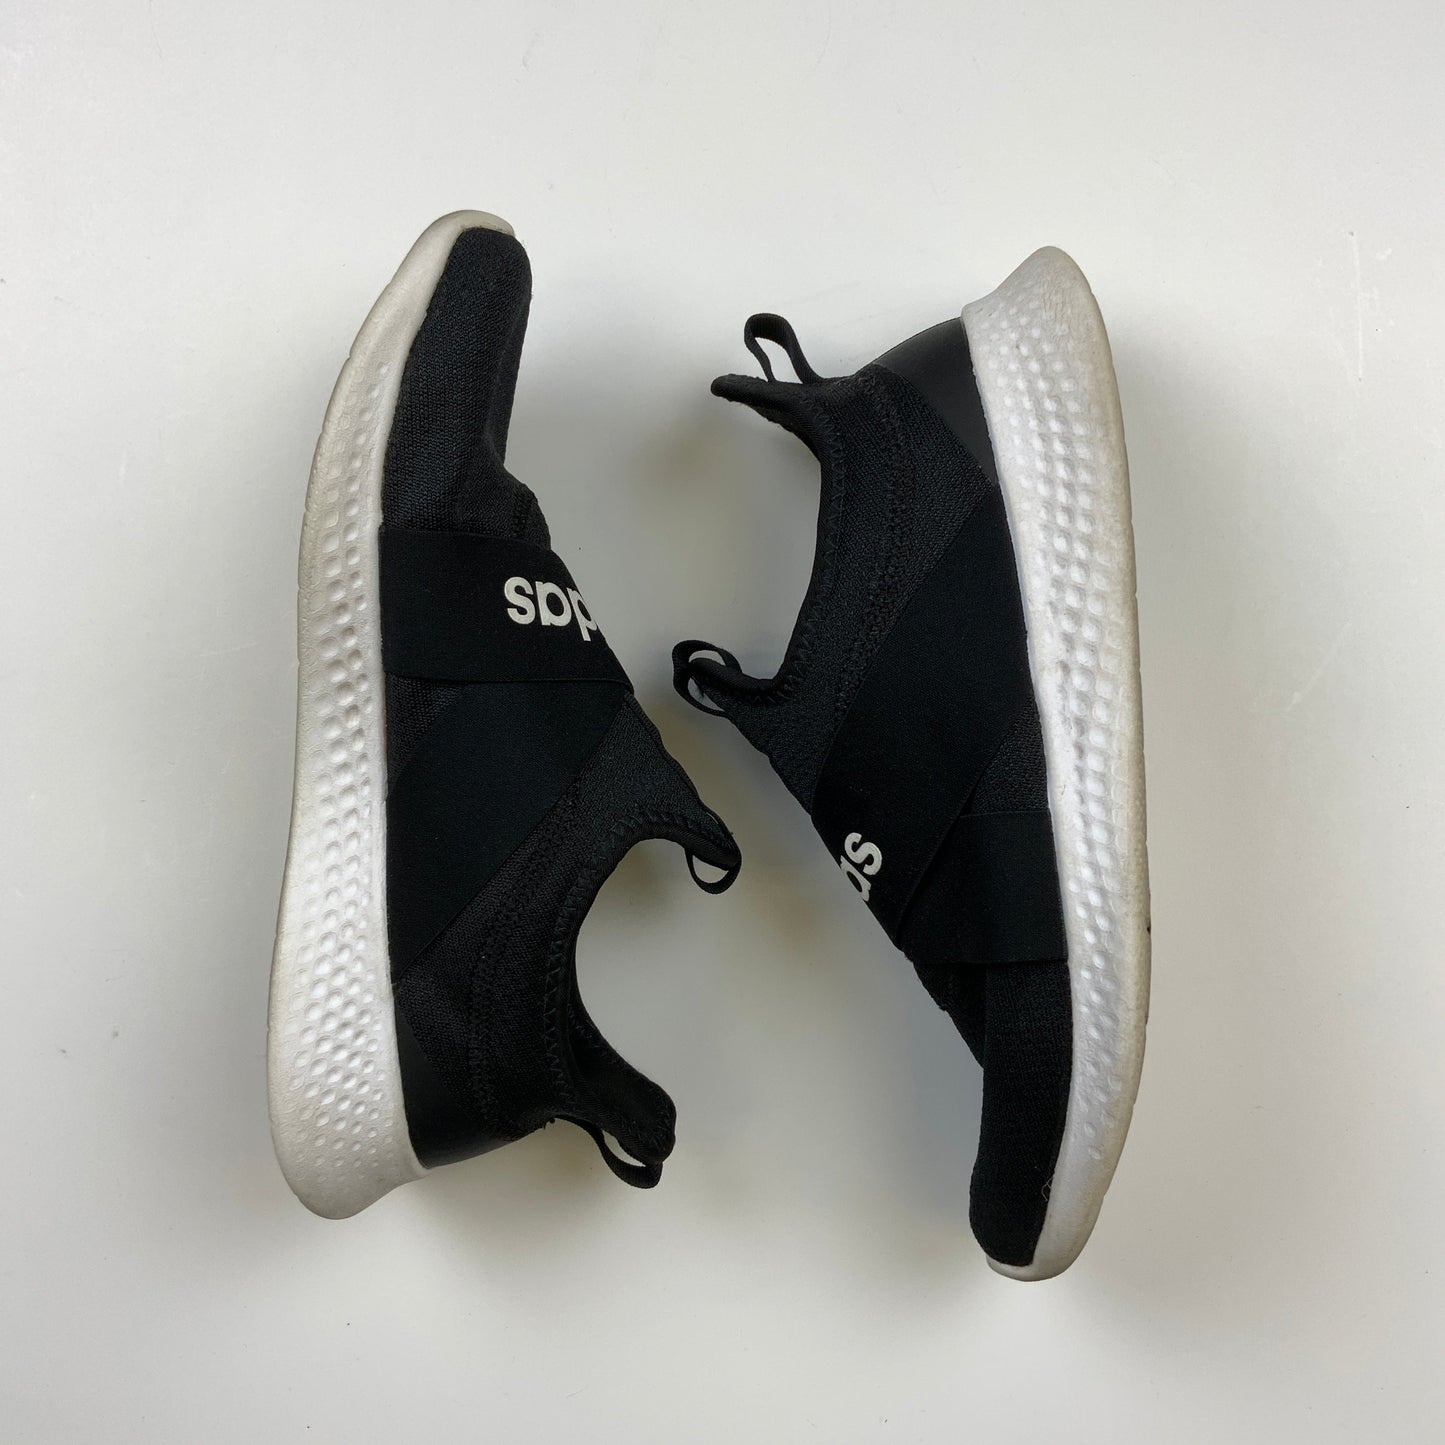 Black & White Shoes Athletic Adidas, Size 10